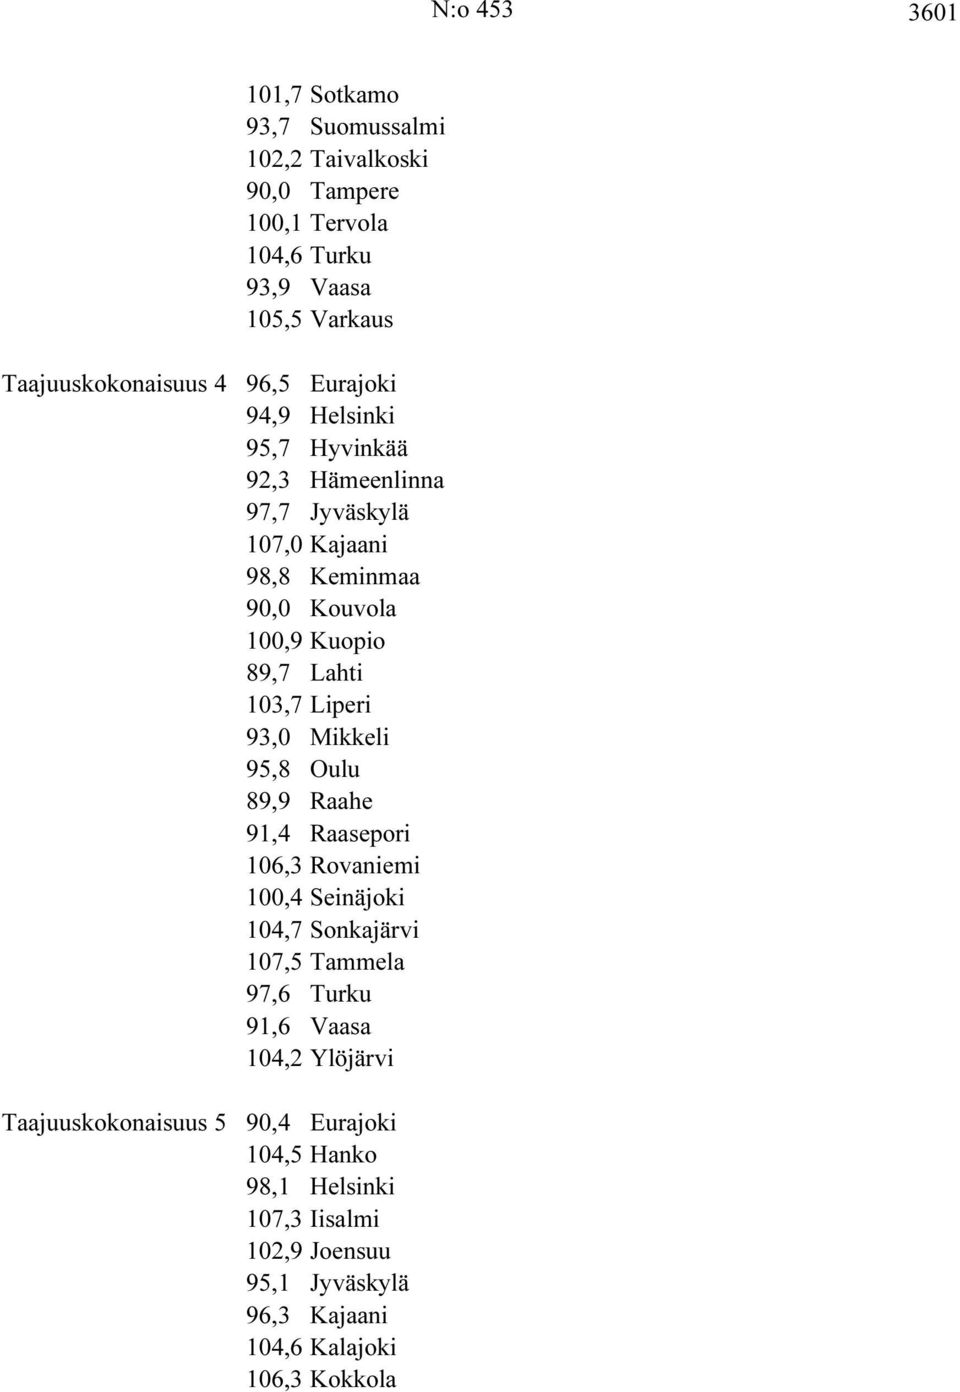 Liperi 93,0 Mikkeli 95,8 Oulu 89,9 Raahe 91,4 Raasepori 106,3 Rovaniemi 100,4 Seinäjoki 104,7 Sonkajärvi 107,5 Tammela 97,6 Turku 91,6 Vaasa 104,2